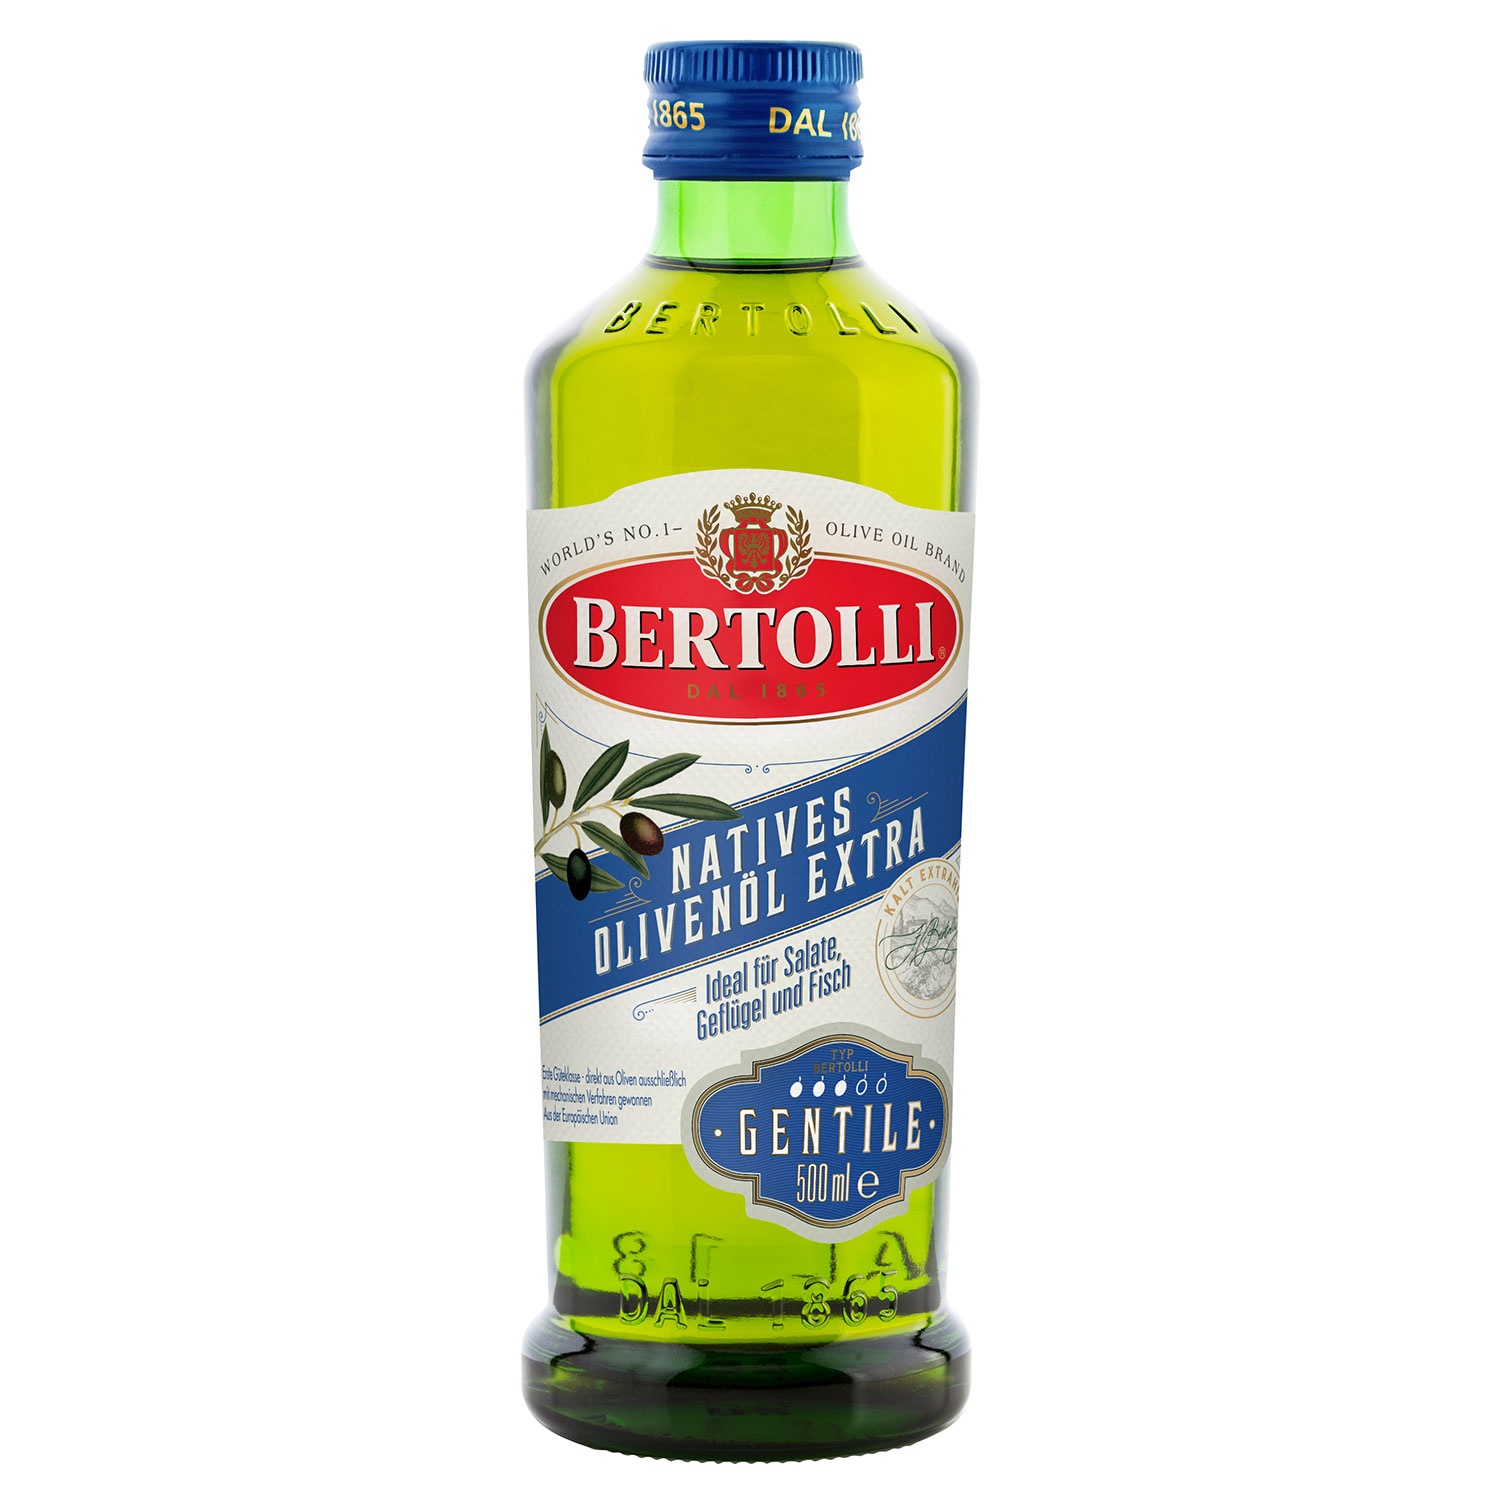 BERTOLLI Olivenöl oder Natives Olivenöl Extra 500 ml